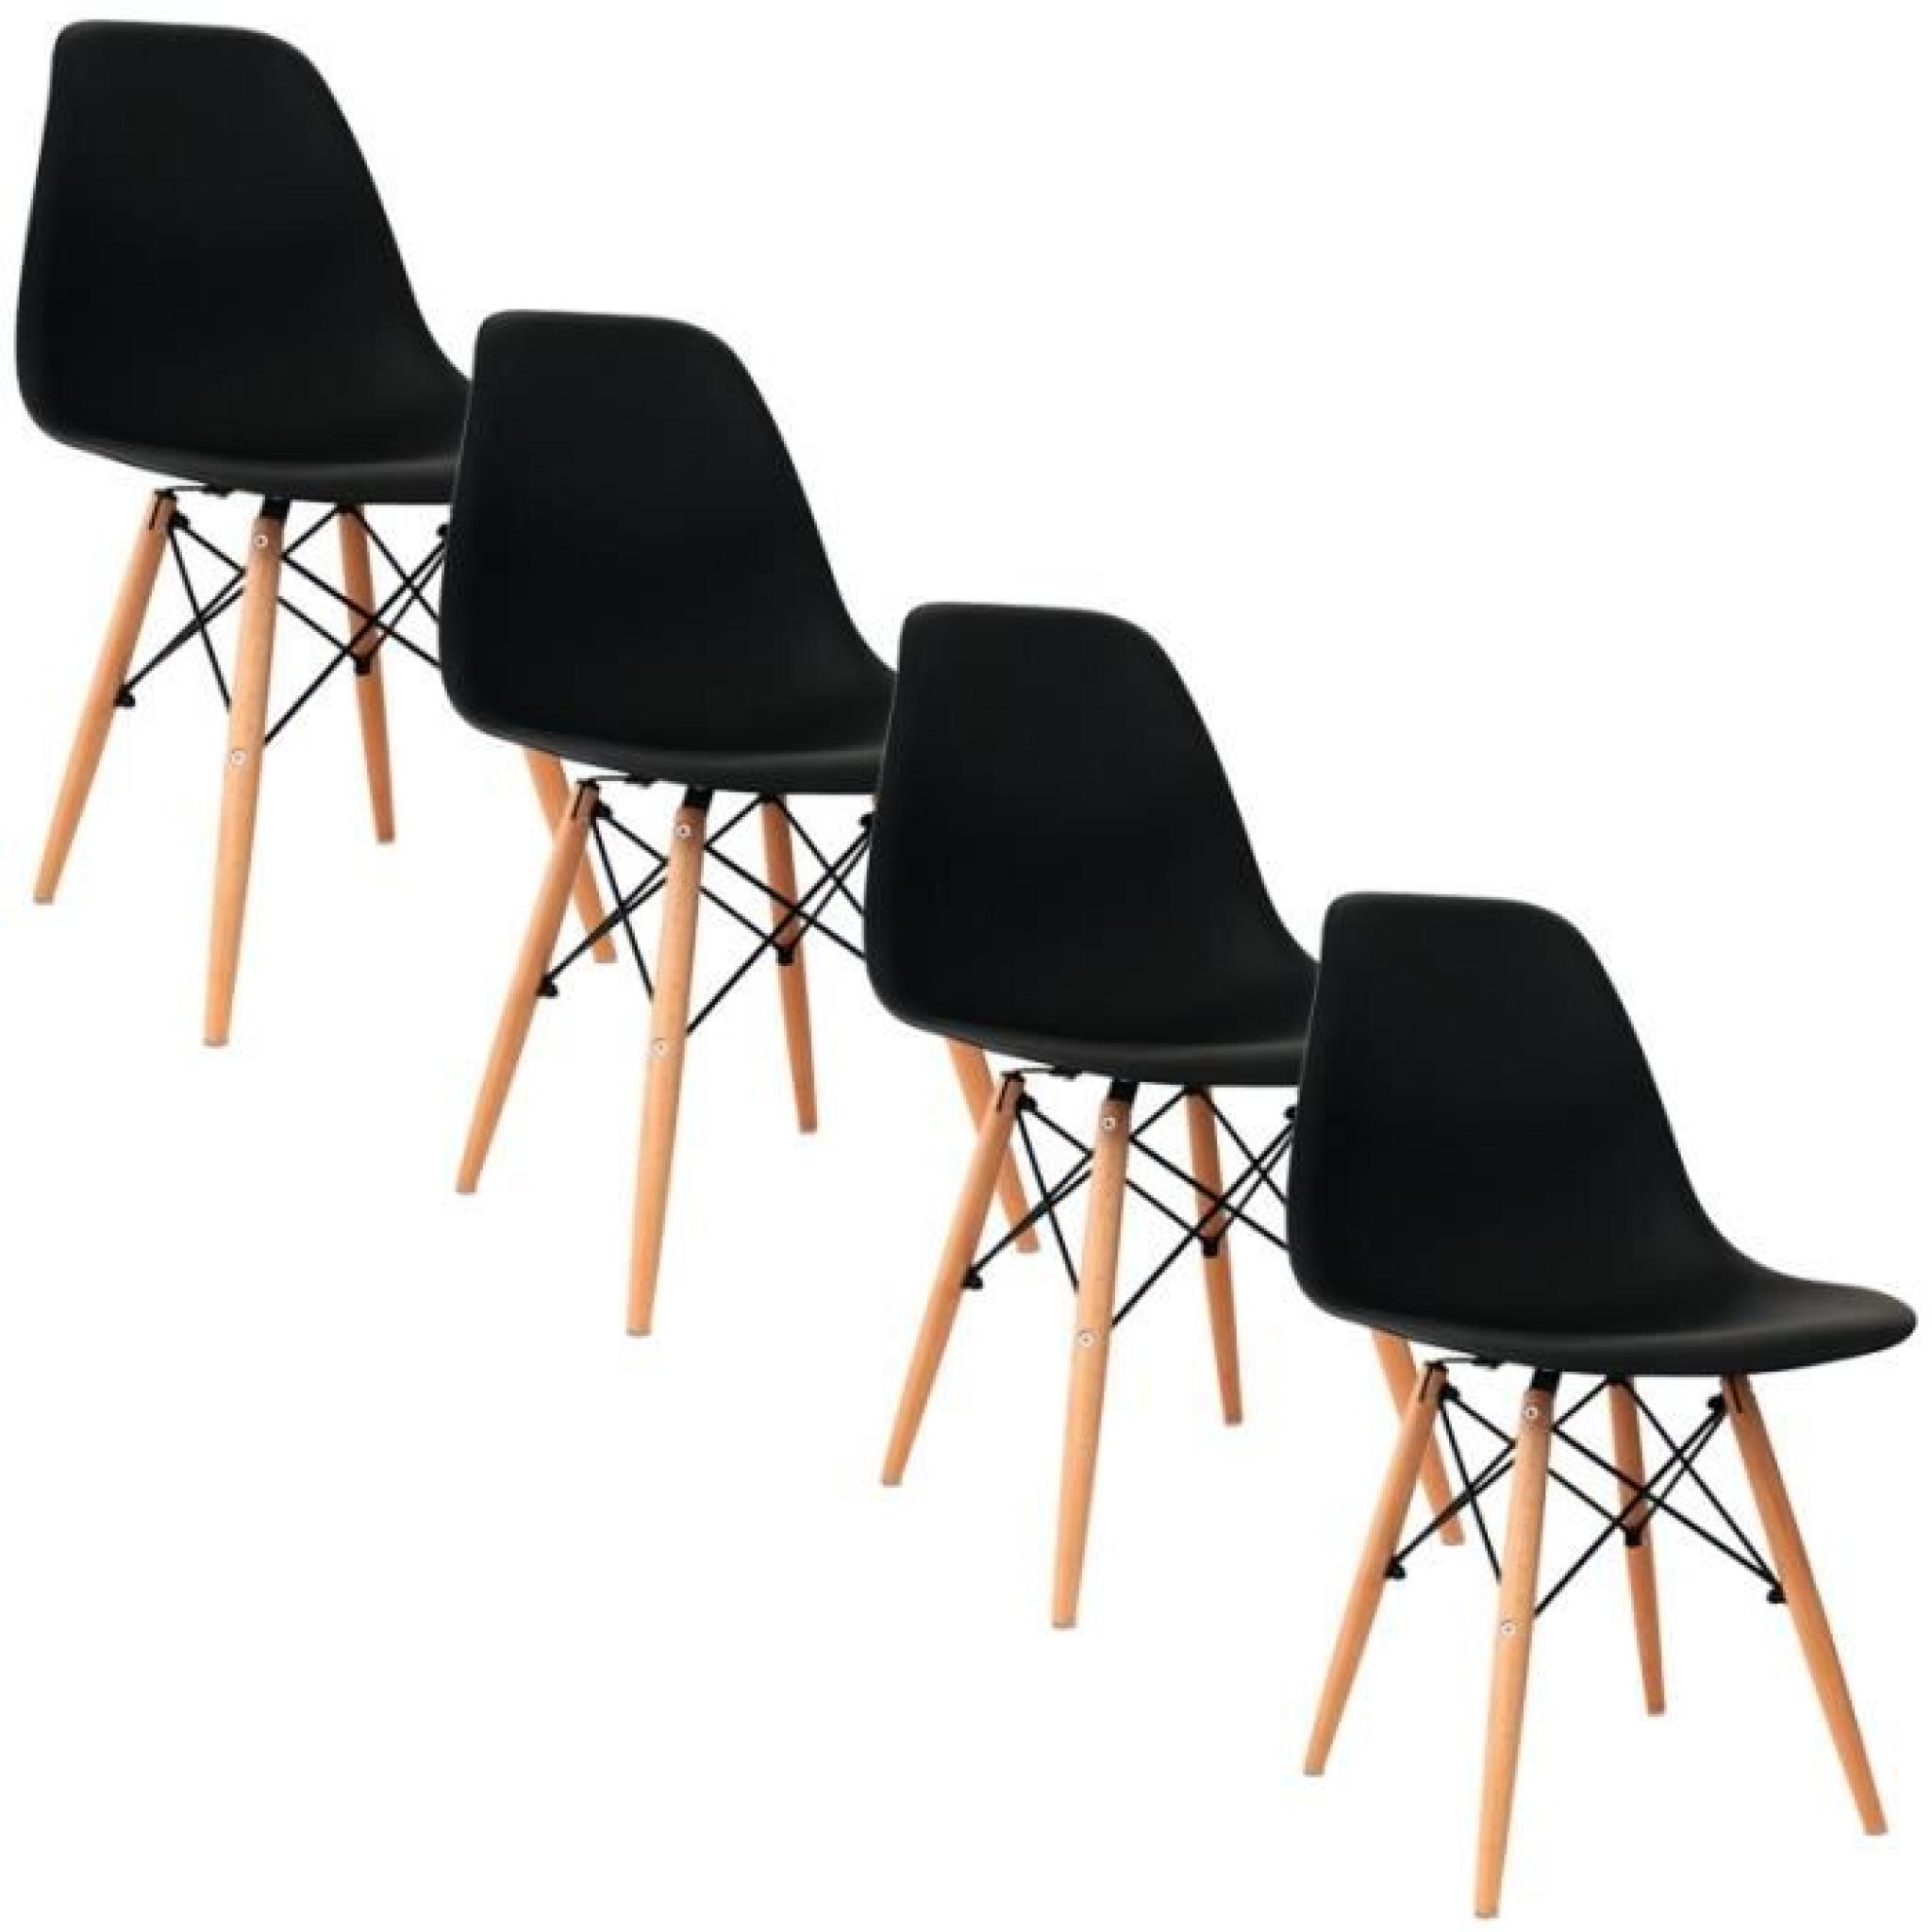 Chaise design noir pieds en bois RETRO lot de 4